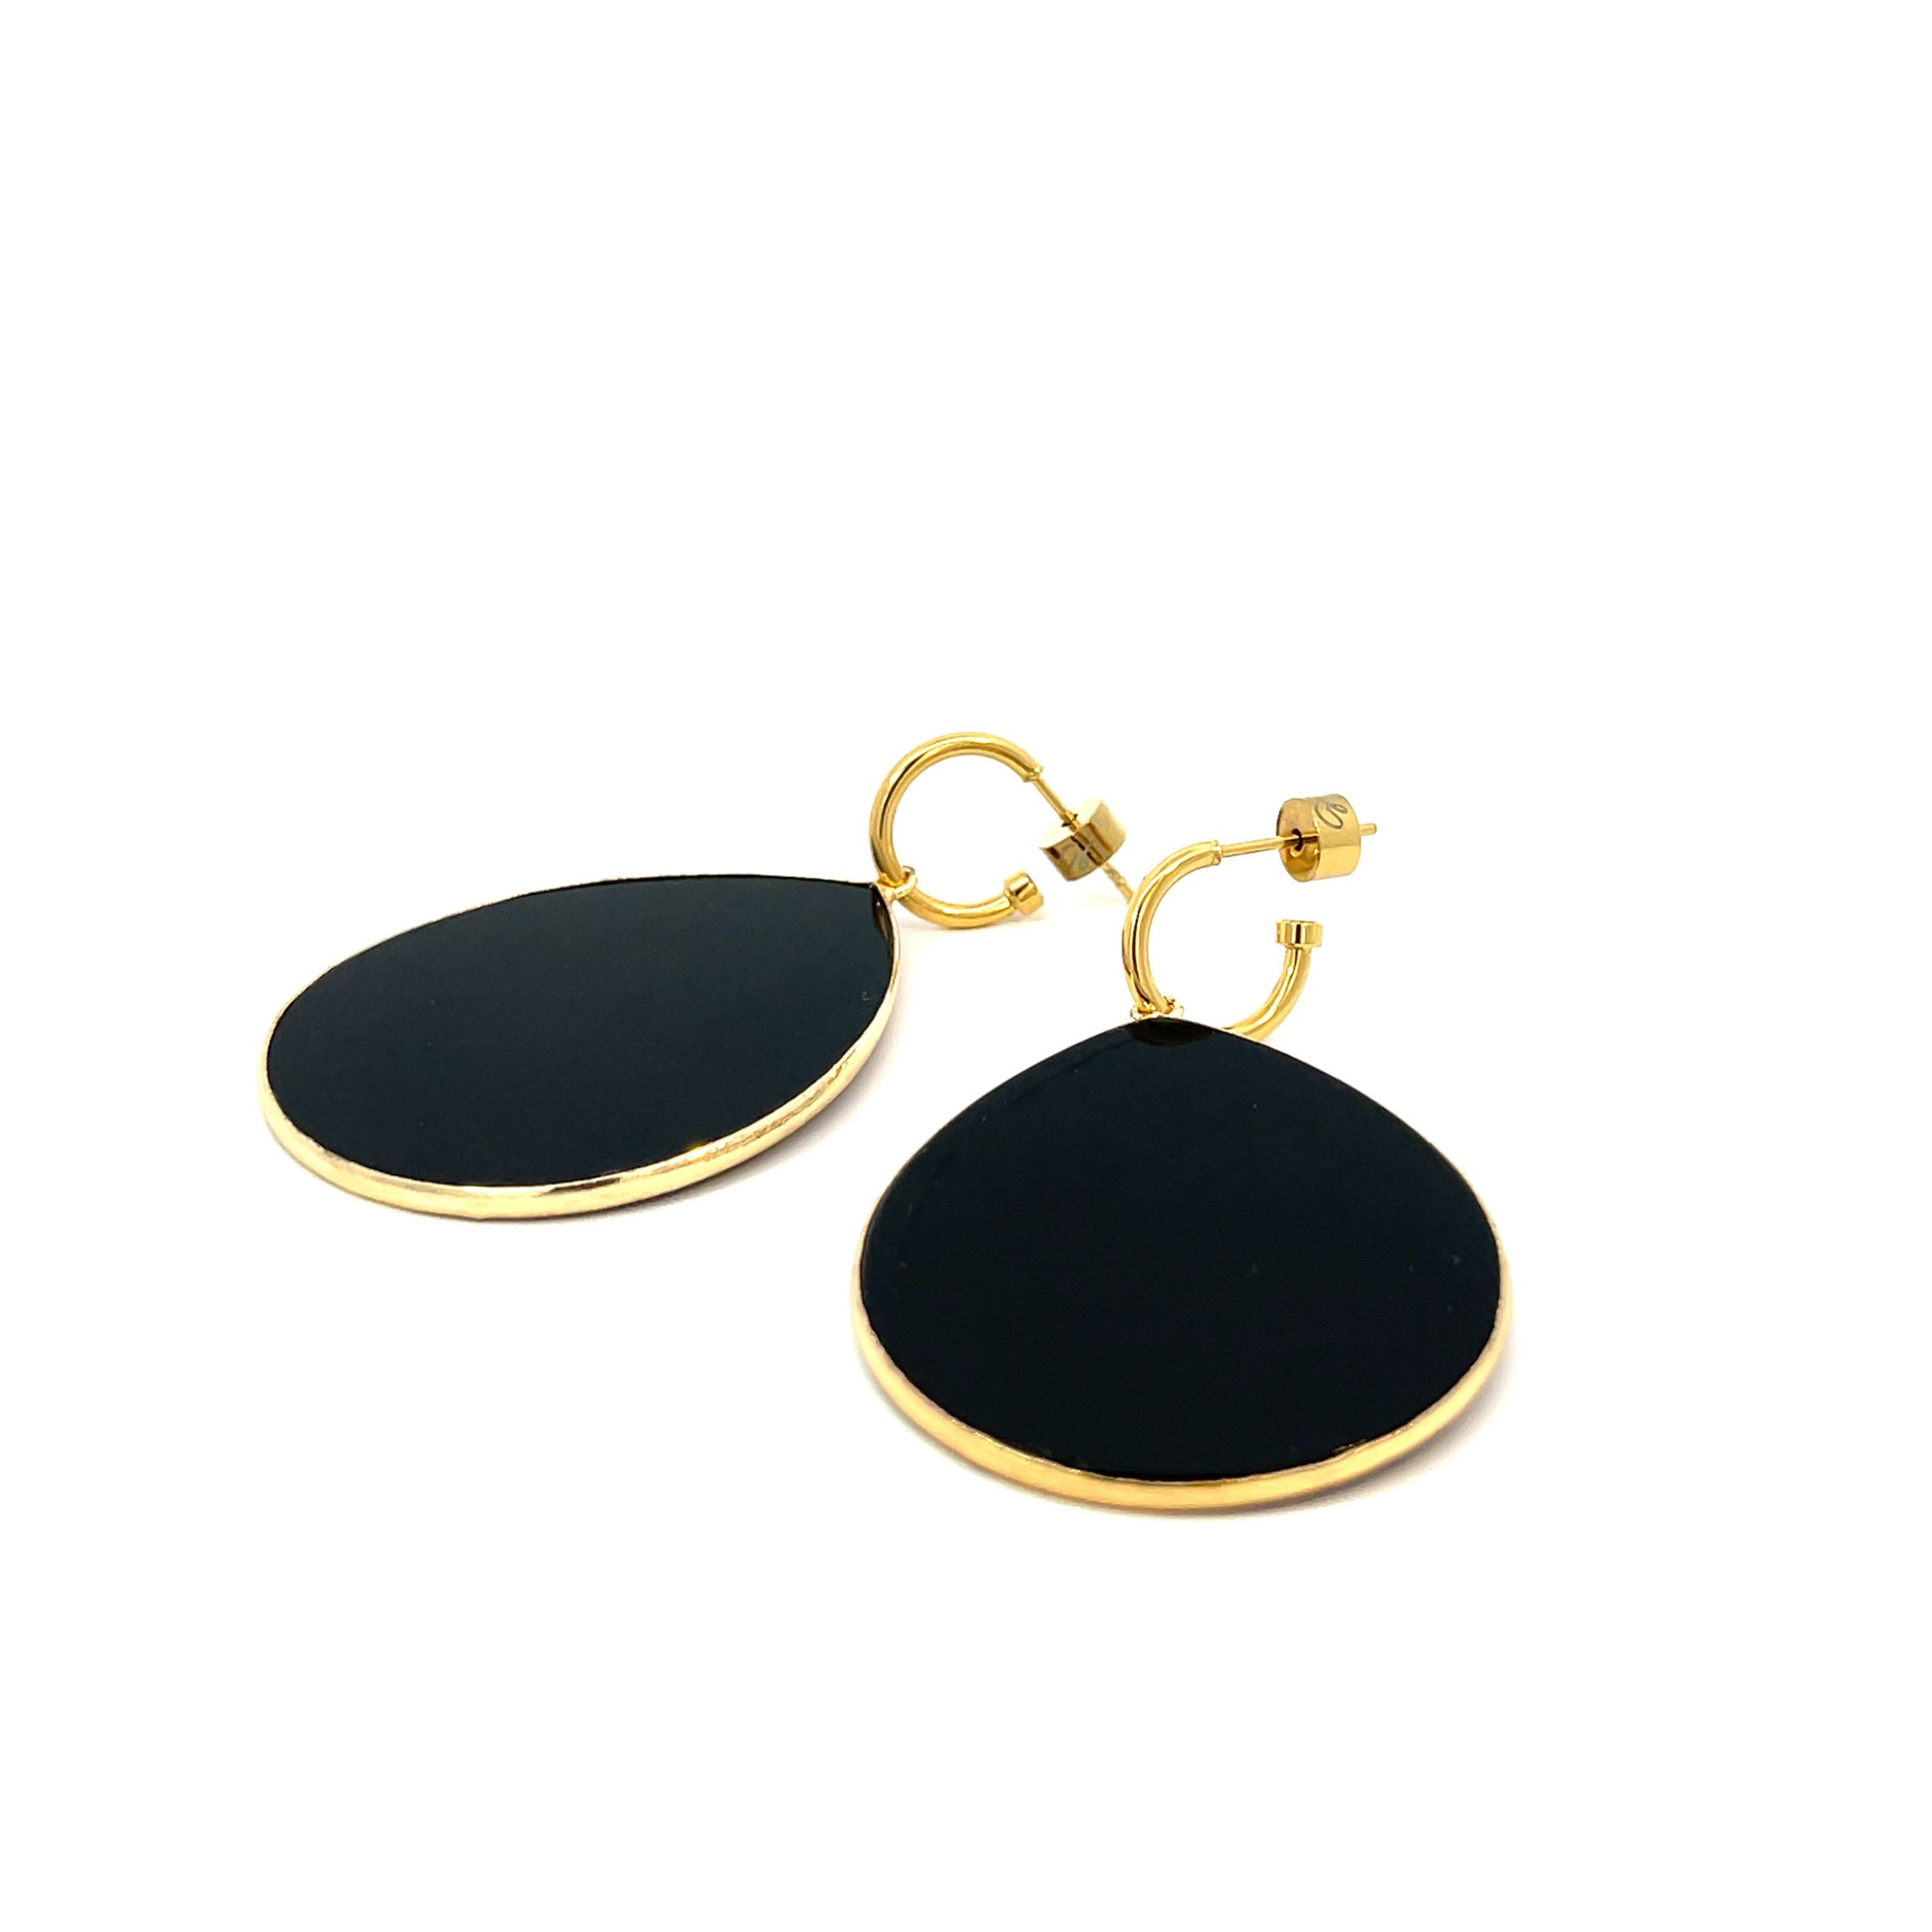 New Heavenly Beauty Oval Drop Earrings/Grounded/Black Obsidian